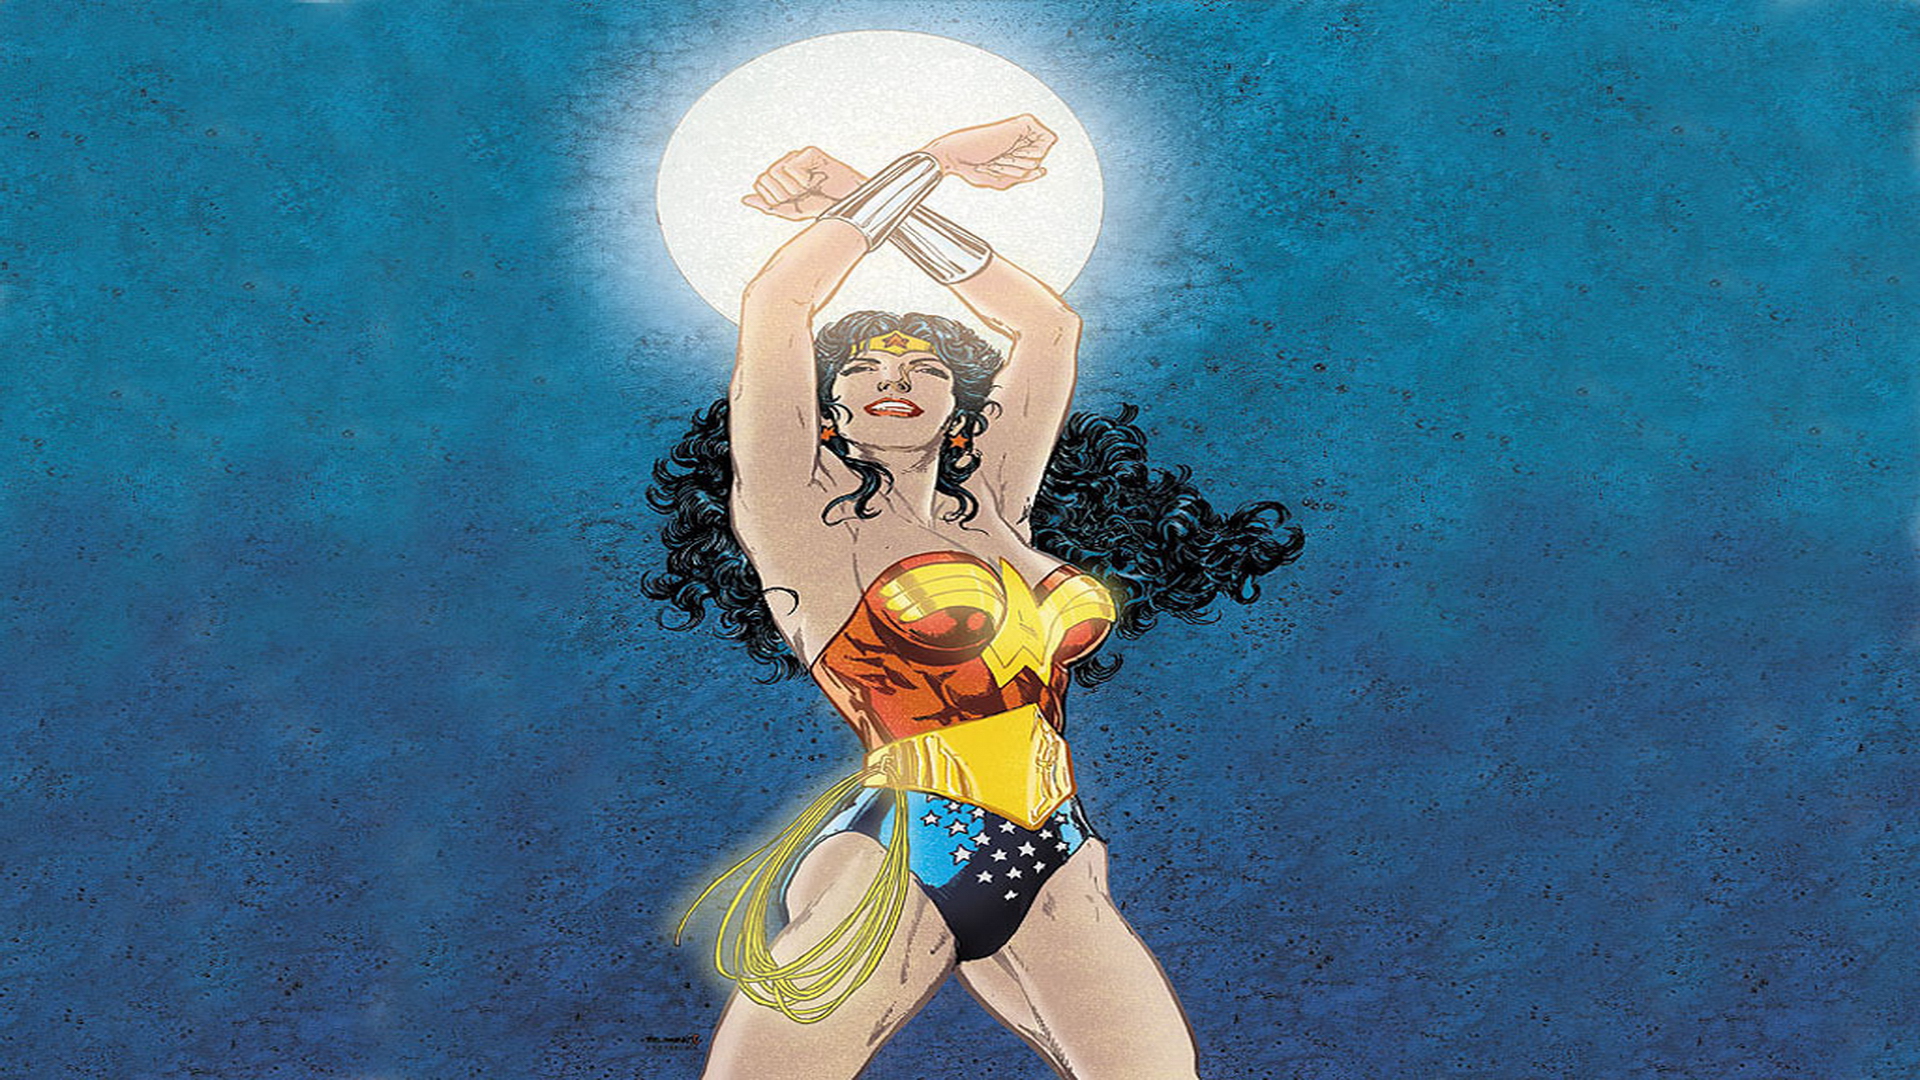 Wonder Woman dc comics 3977088 1024 768jpg